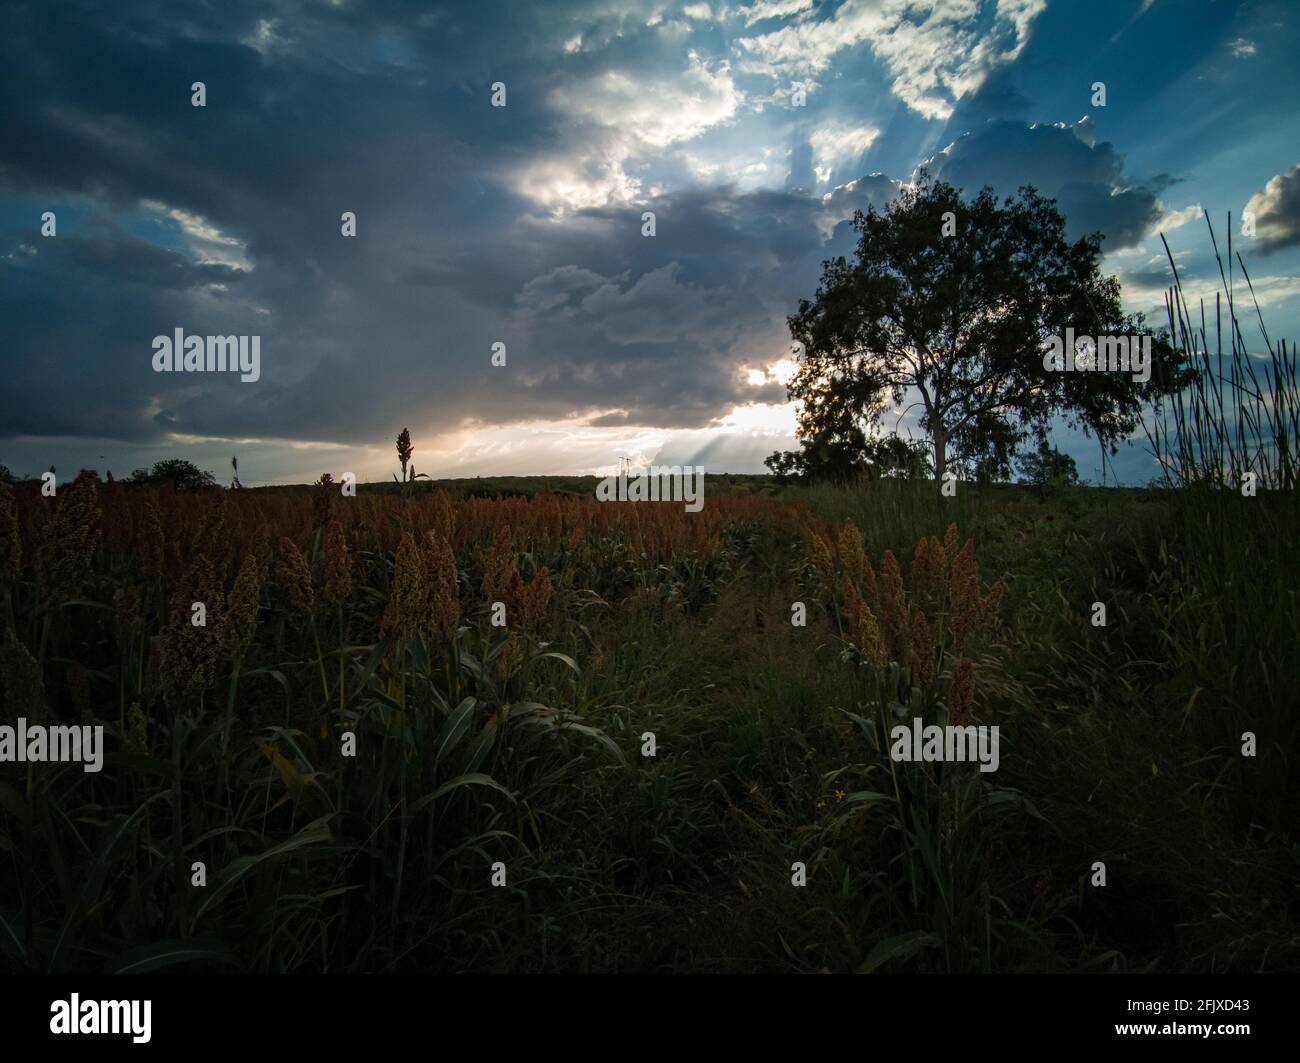 El trigo se cosecha en una puesta de sol nublada Foto de stock